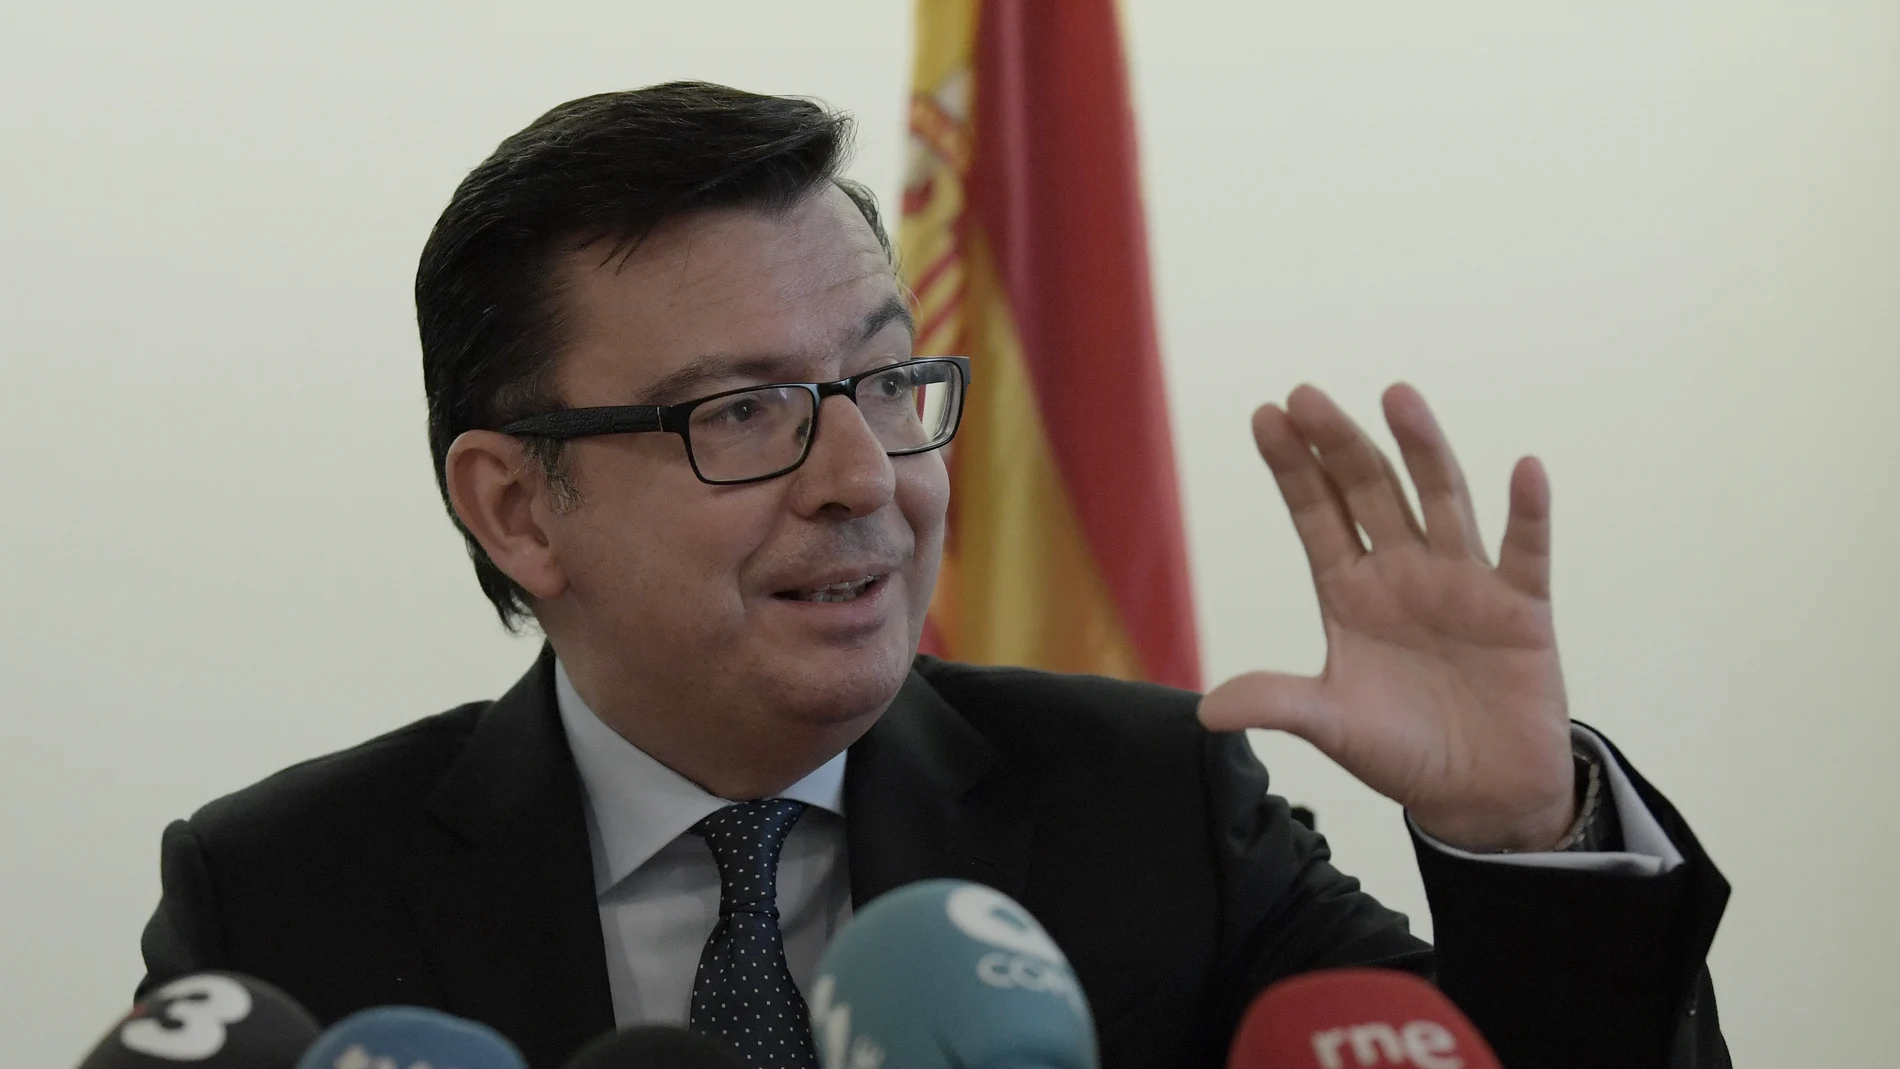 El ministro de Economía, Industria y Competitividad de España, Román Escolano